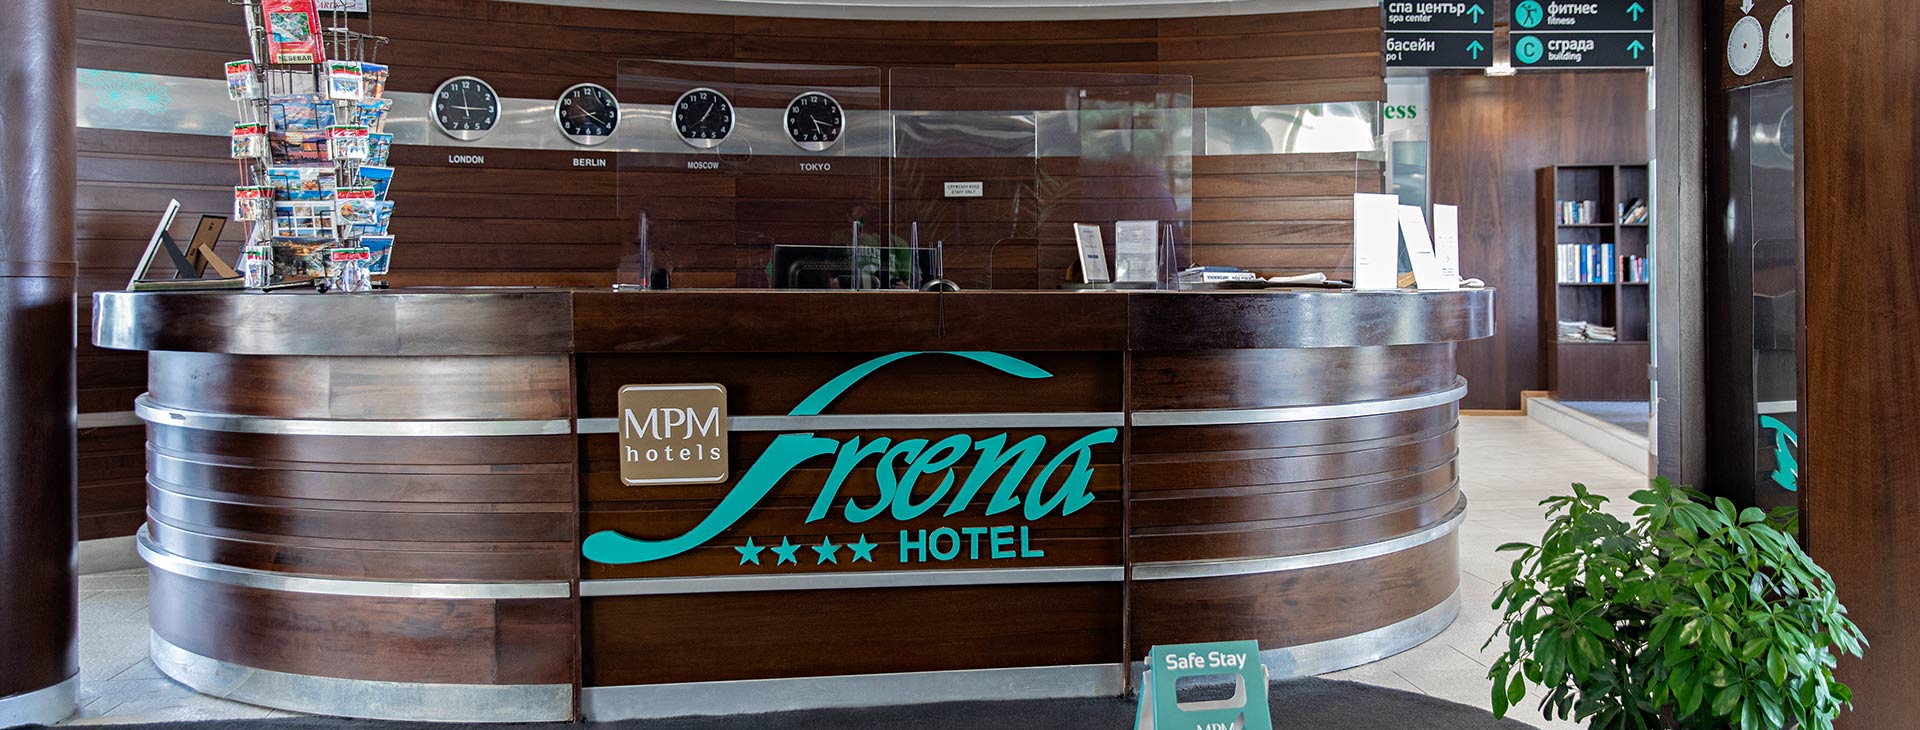 Hotel MPM Arsena Obrázek12